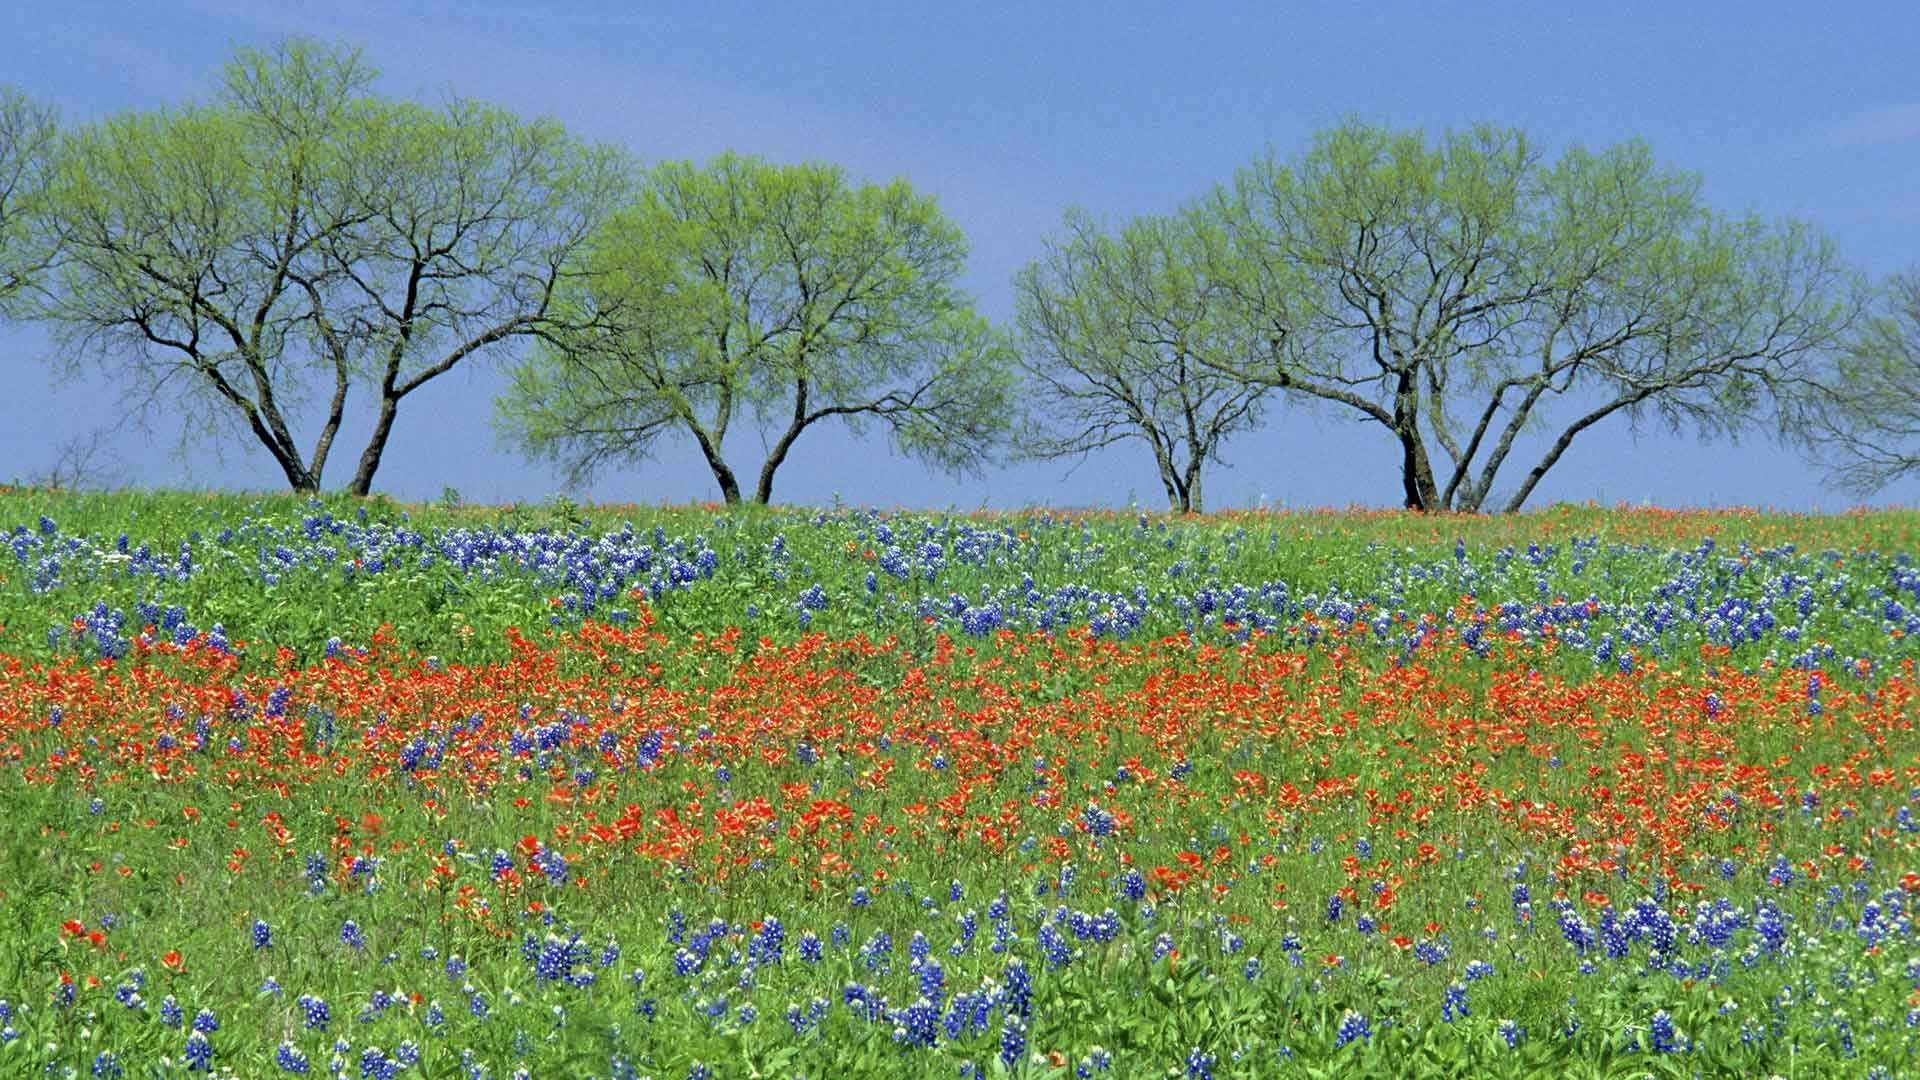 1920x1080 Flowers Bluebonnet Wildflowers Texas Fields Parks Nature Image 3D